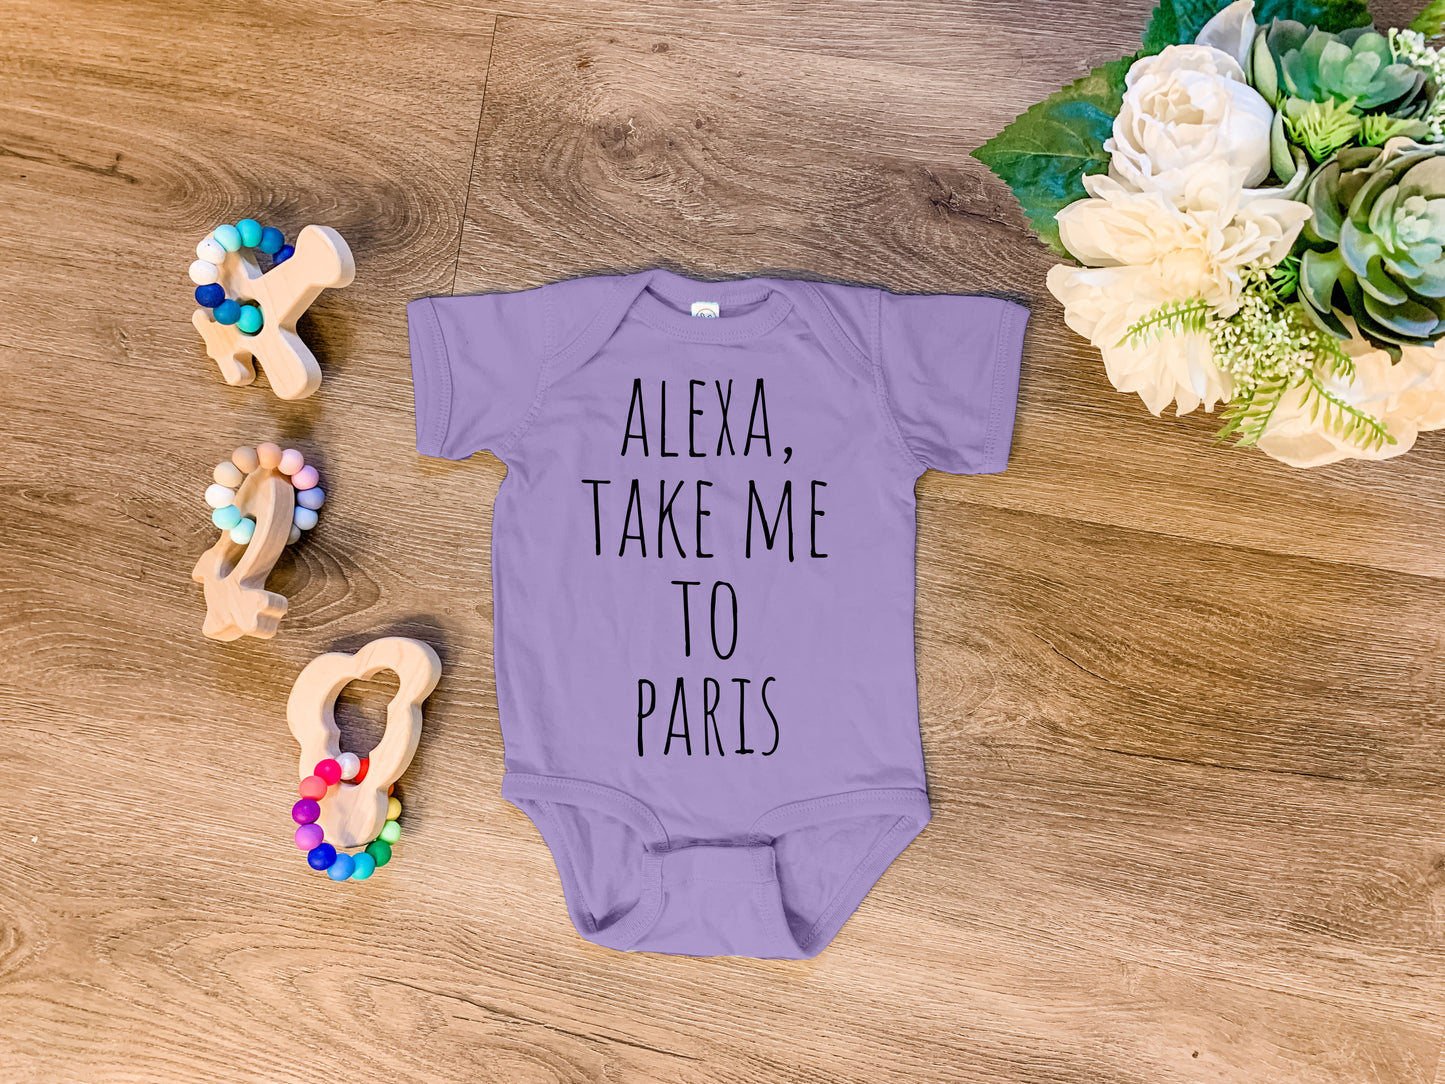 Alexa, Take Me To Paris - Onesie - Heather Gray, Chill, or Lavender